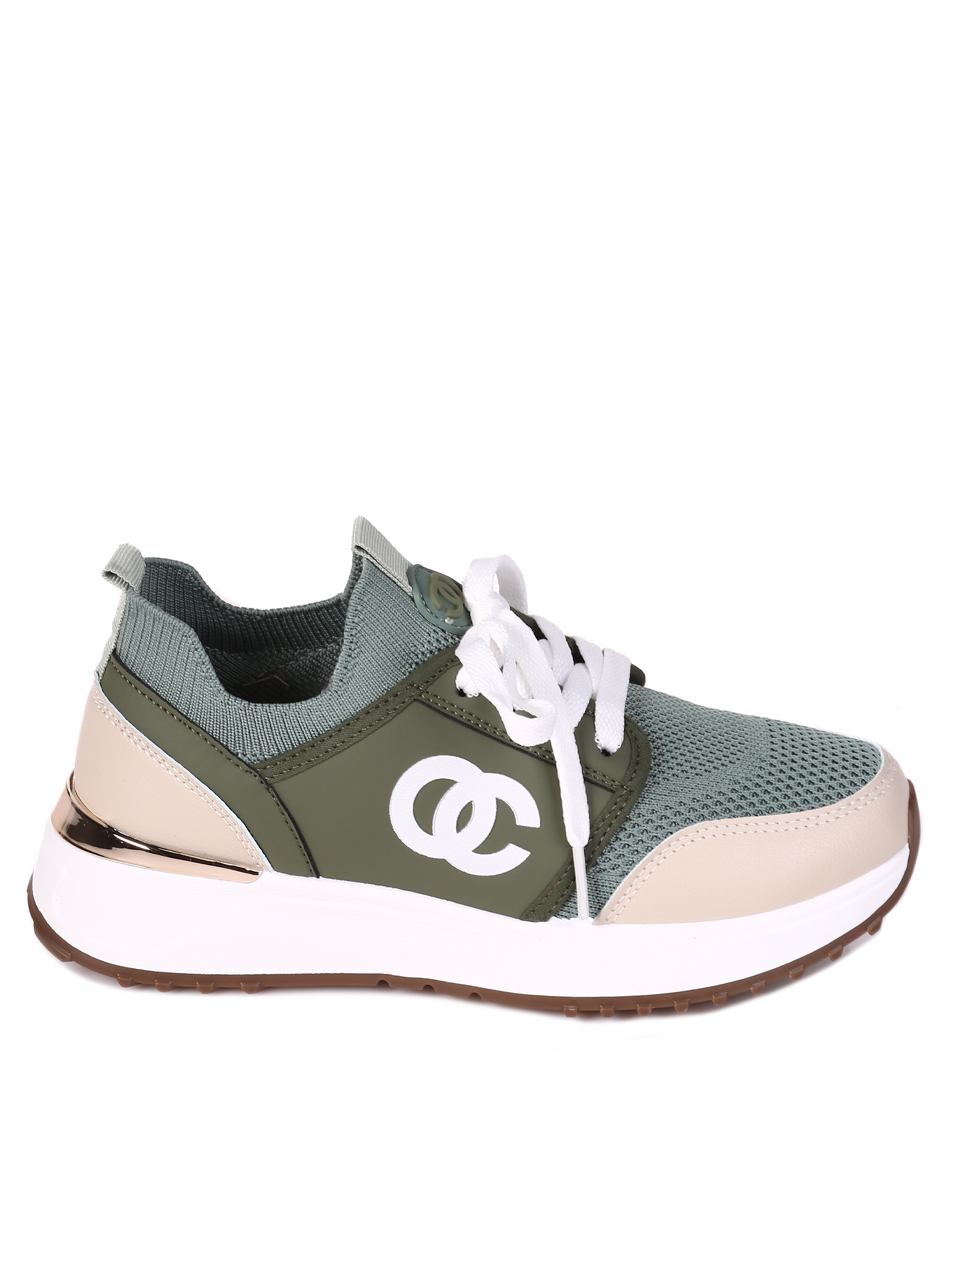 Ежедневни дамски комфортни обувки в зелено 3U-23206 green